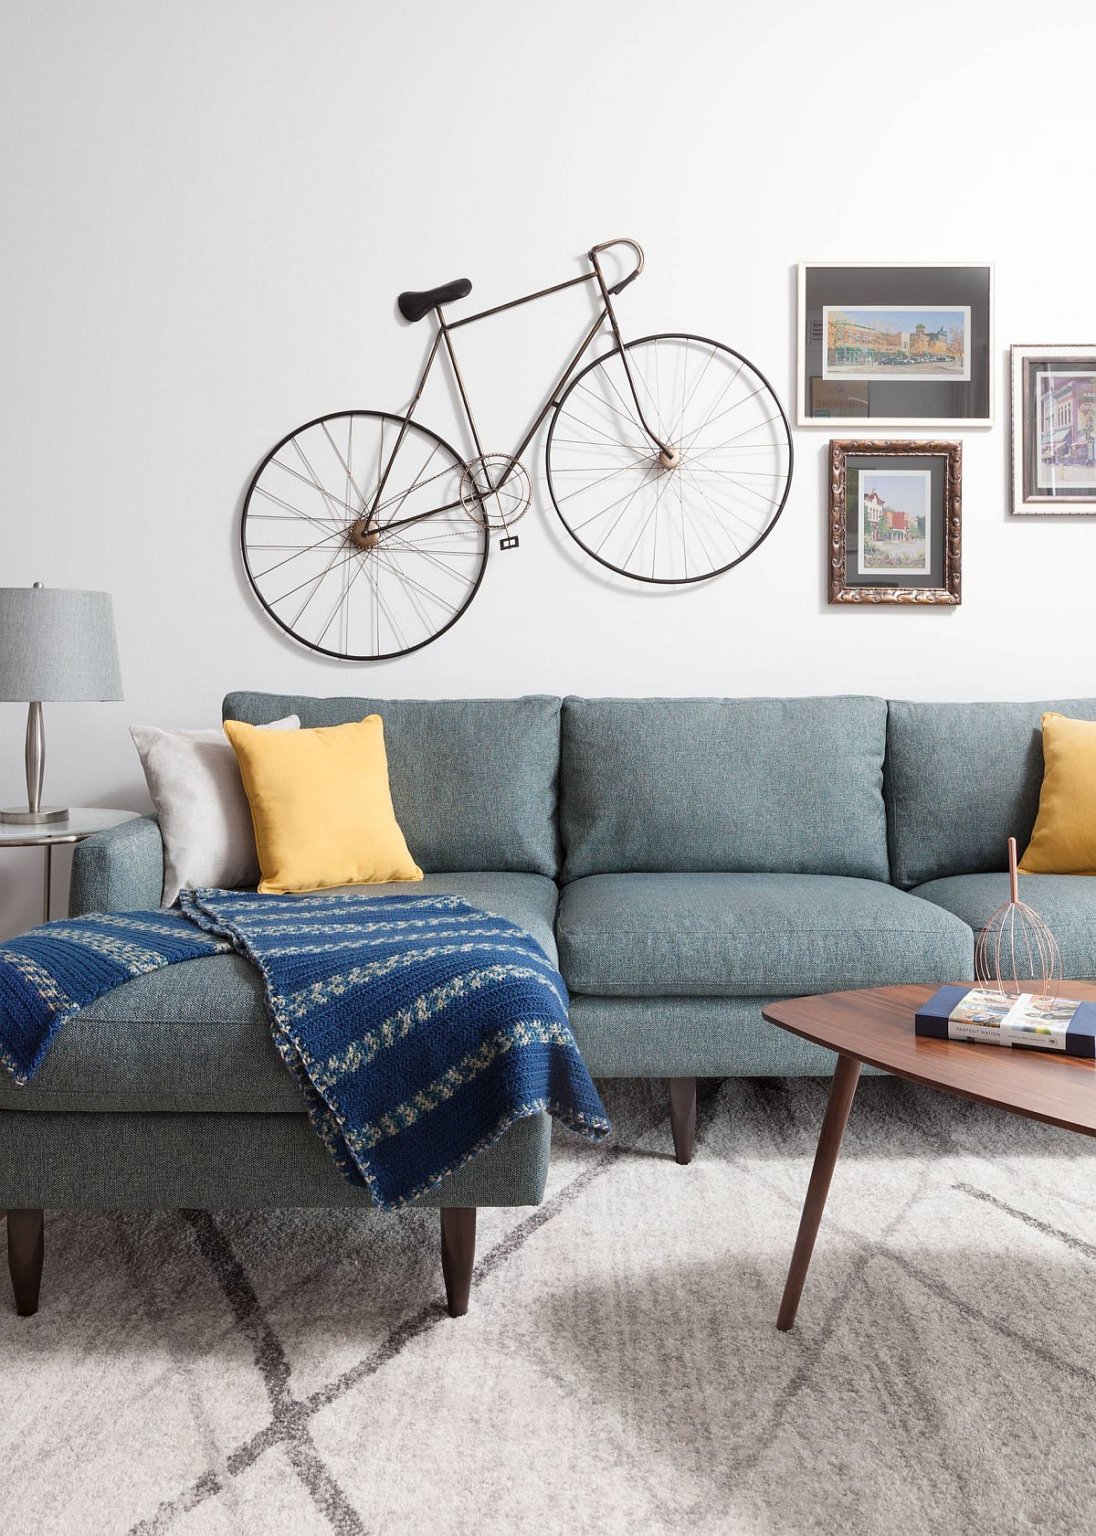 Hình ảnh cận cảnh phòng khách nhỏ với ghế sofa màu xanh dương, gối tựa màu vàng nổi bật, thảm trải xám